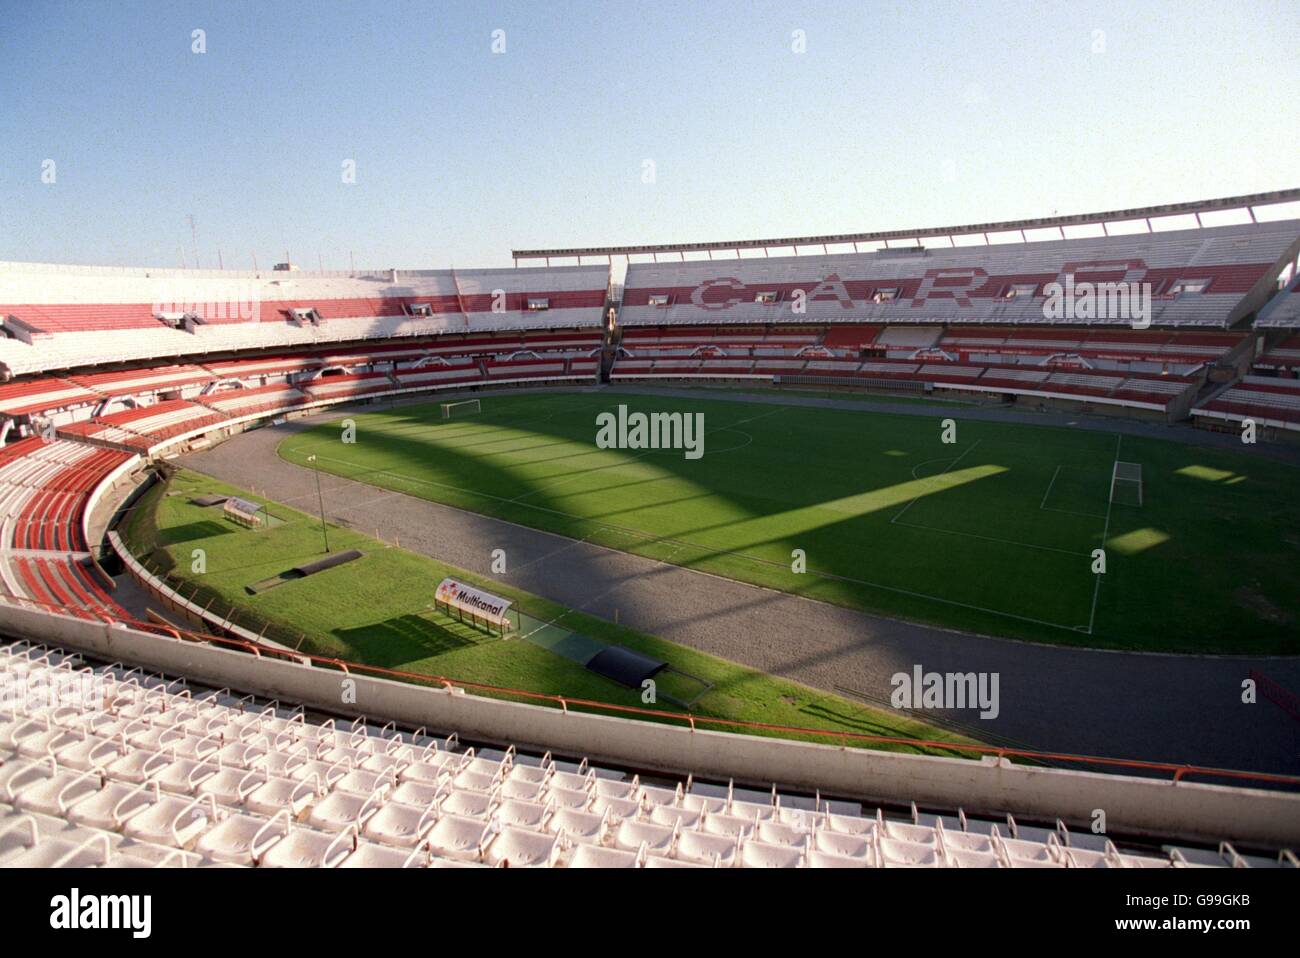 Estadio del Deportivo Español - ESTADIOS DE ARGENTINA